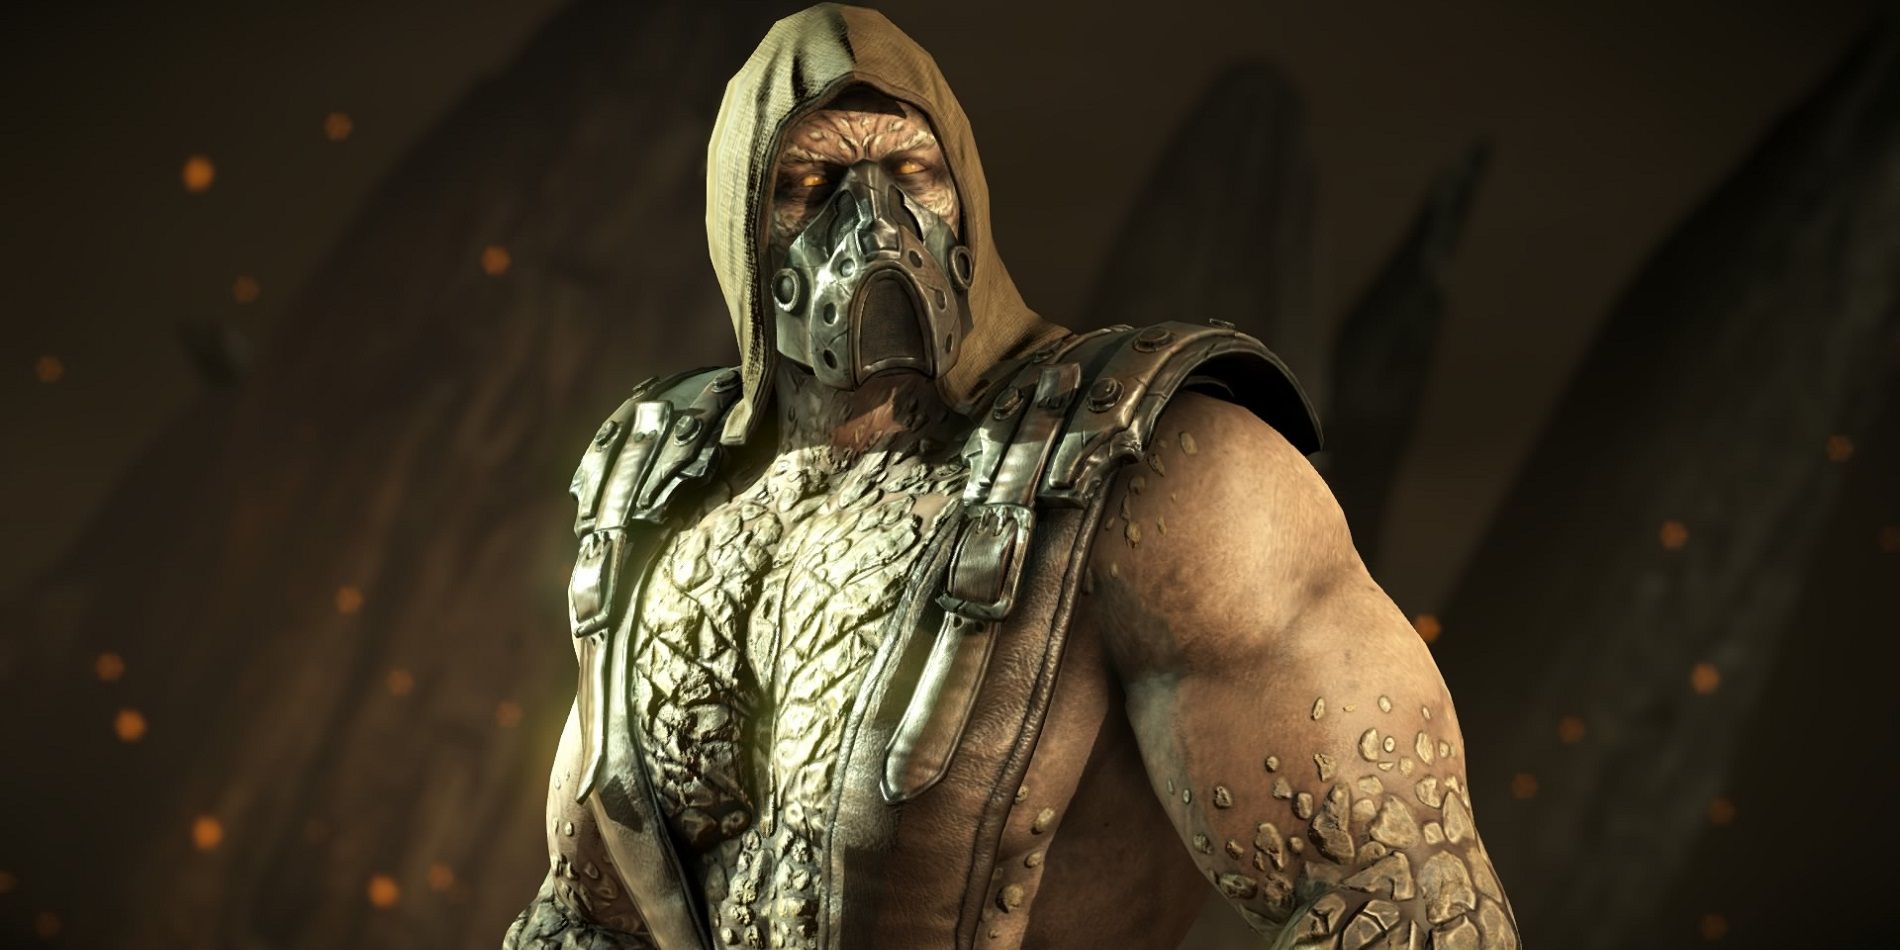 Tremor's character model in Mortal Kombat X